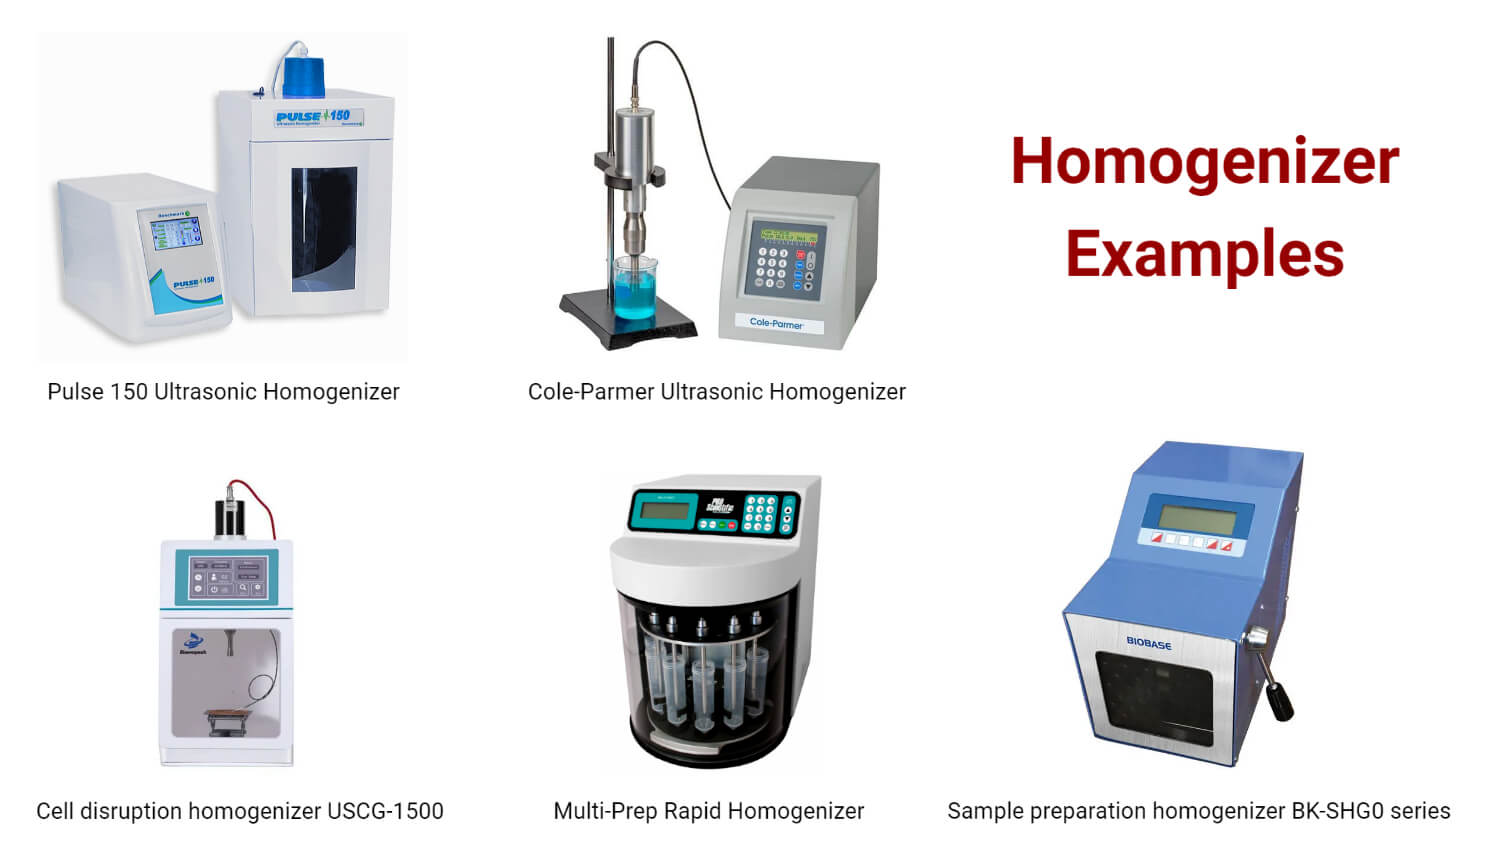 Homogenizer Examples